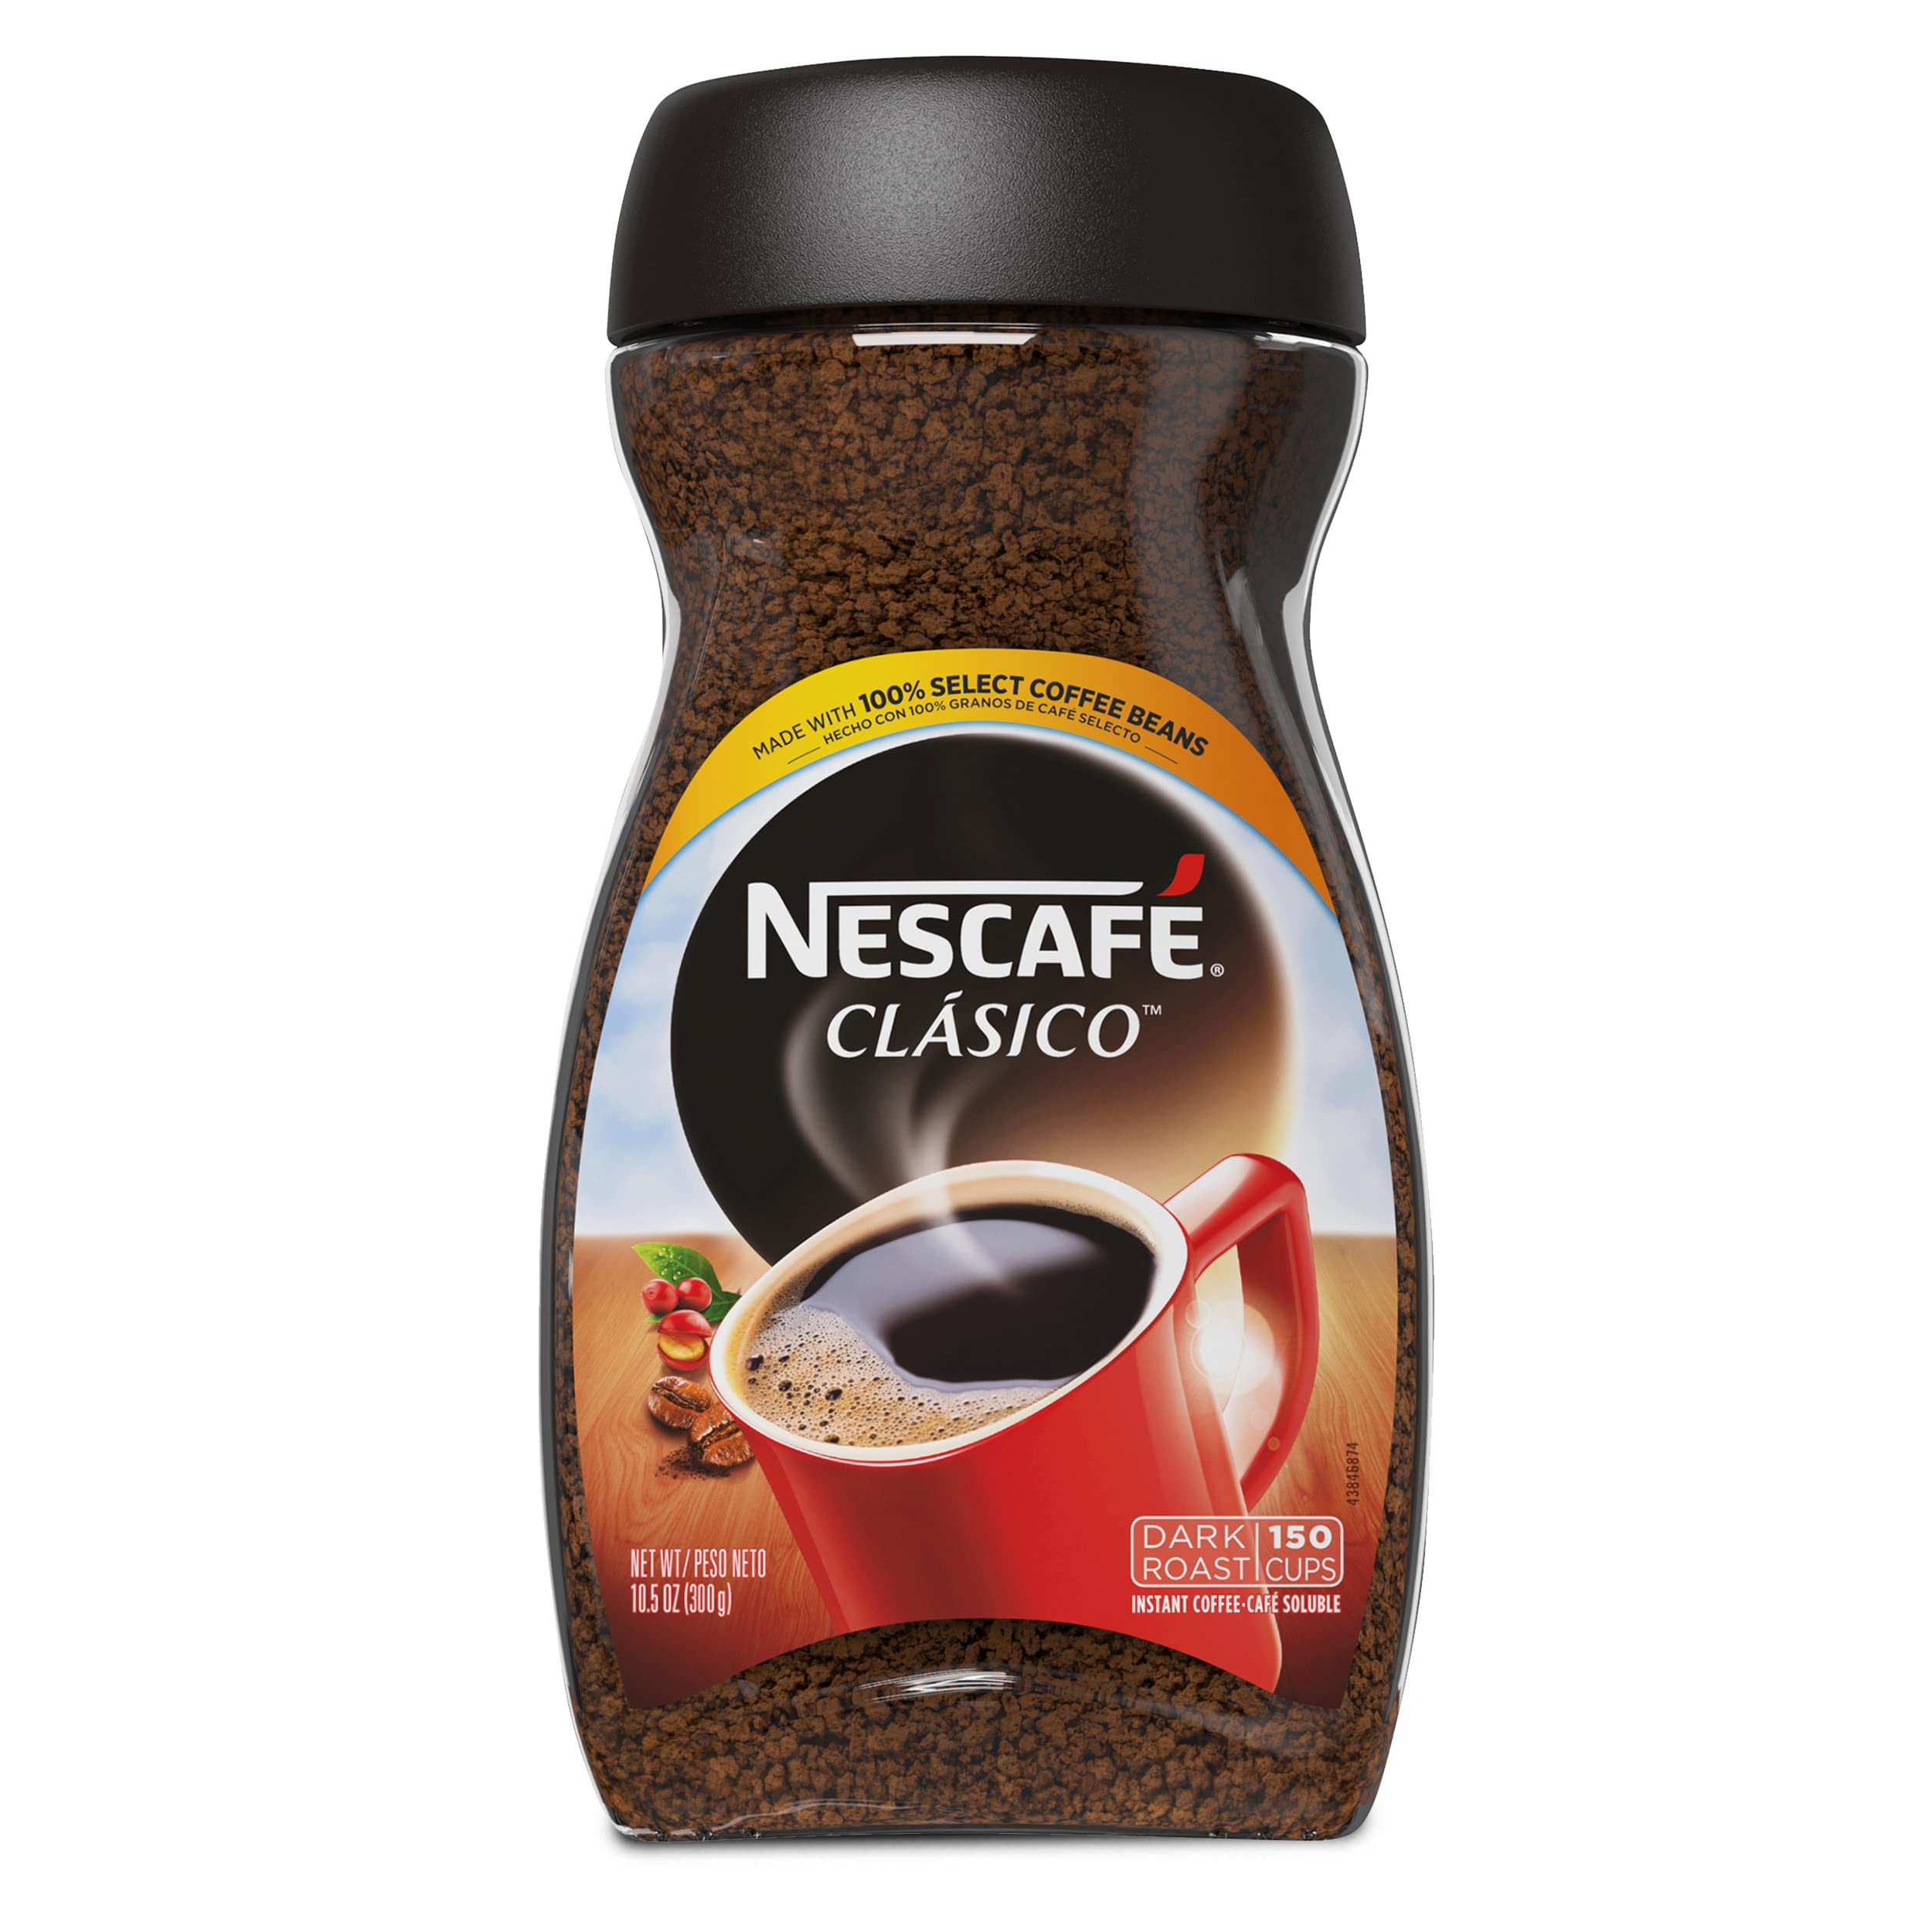 NESCAFE CLASICO Dark Roast Instant Coffee 10.5 oz. Jar $8.48